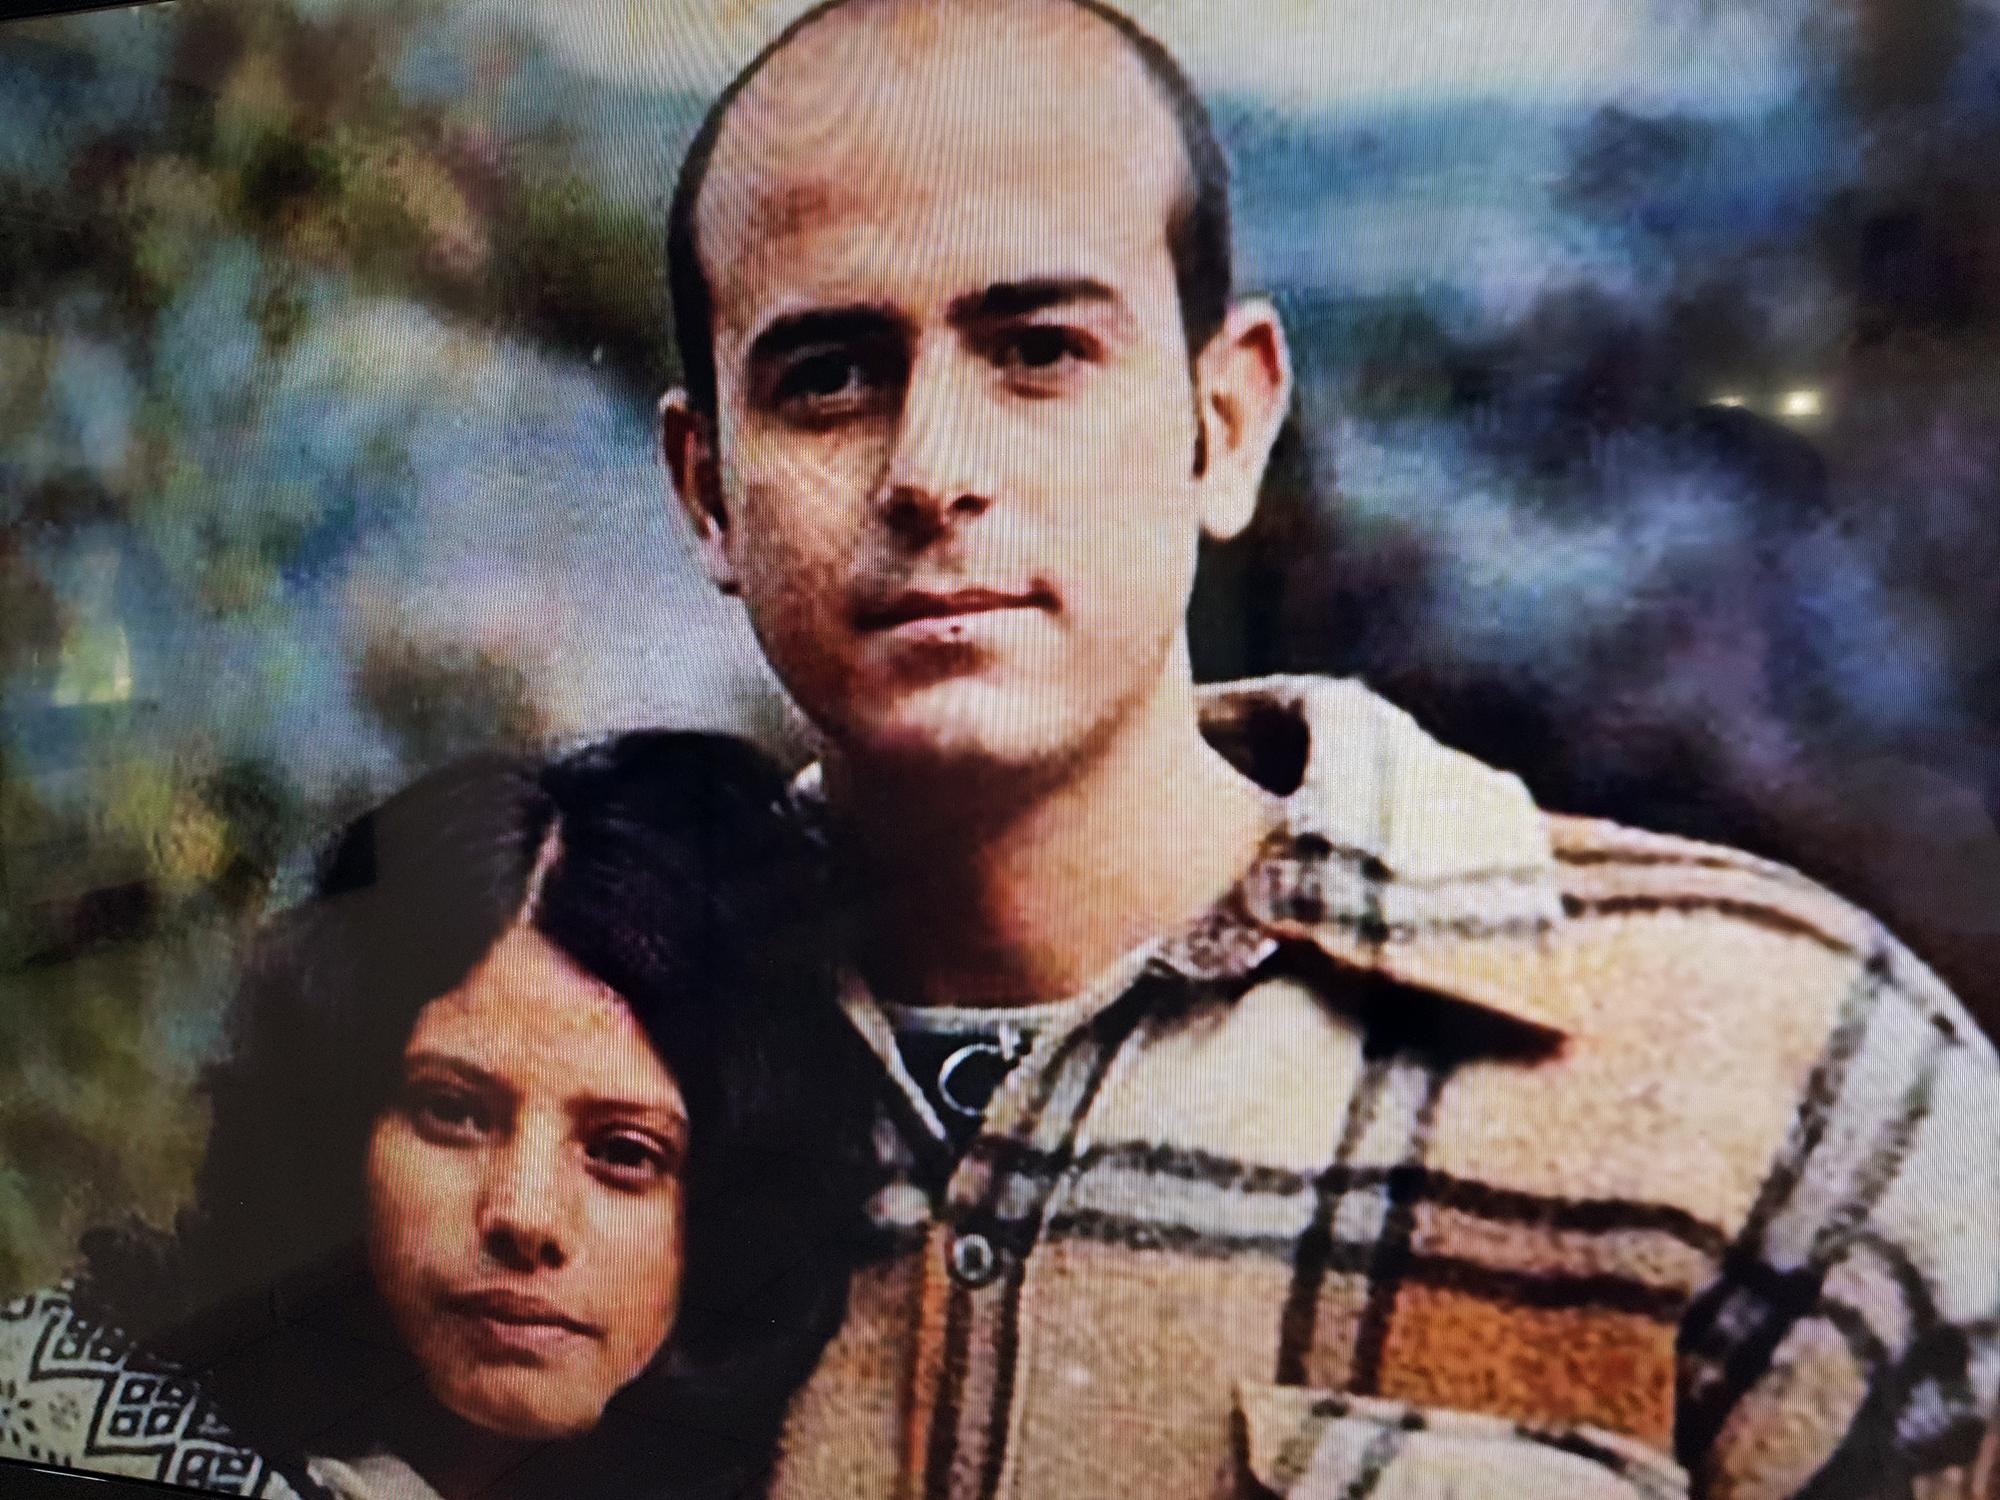 Fernando Llort junto a su esposa, Estela. Foto cortesía de la Familia Llort, tomada en una exposición de video.